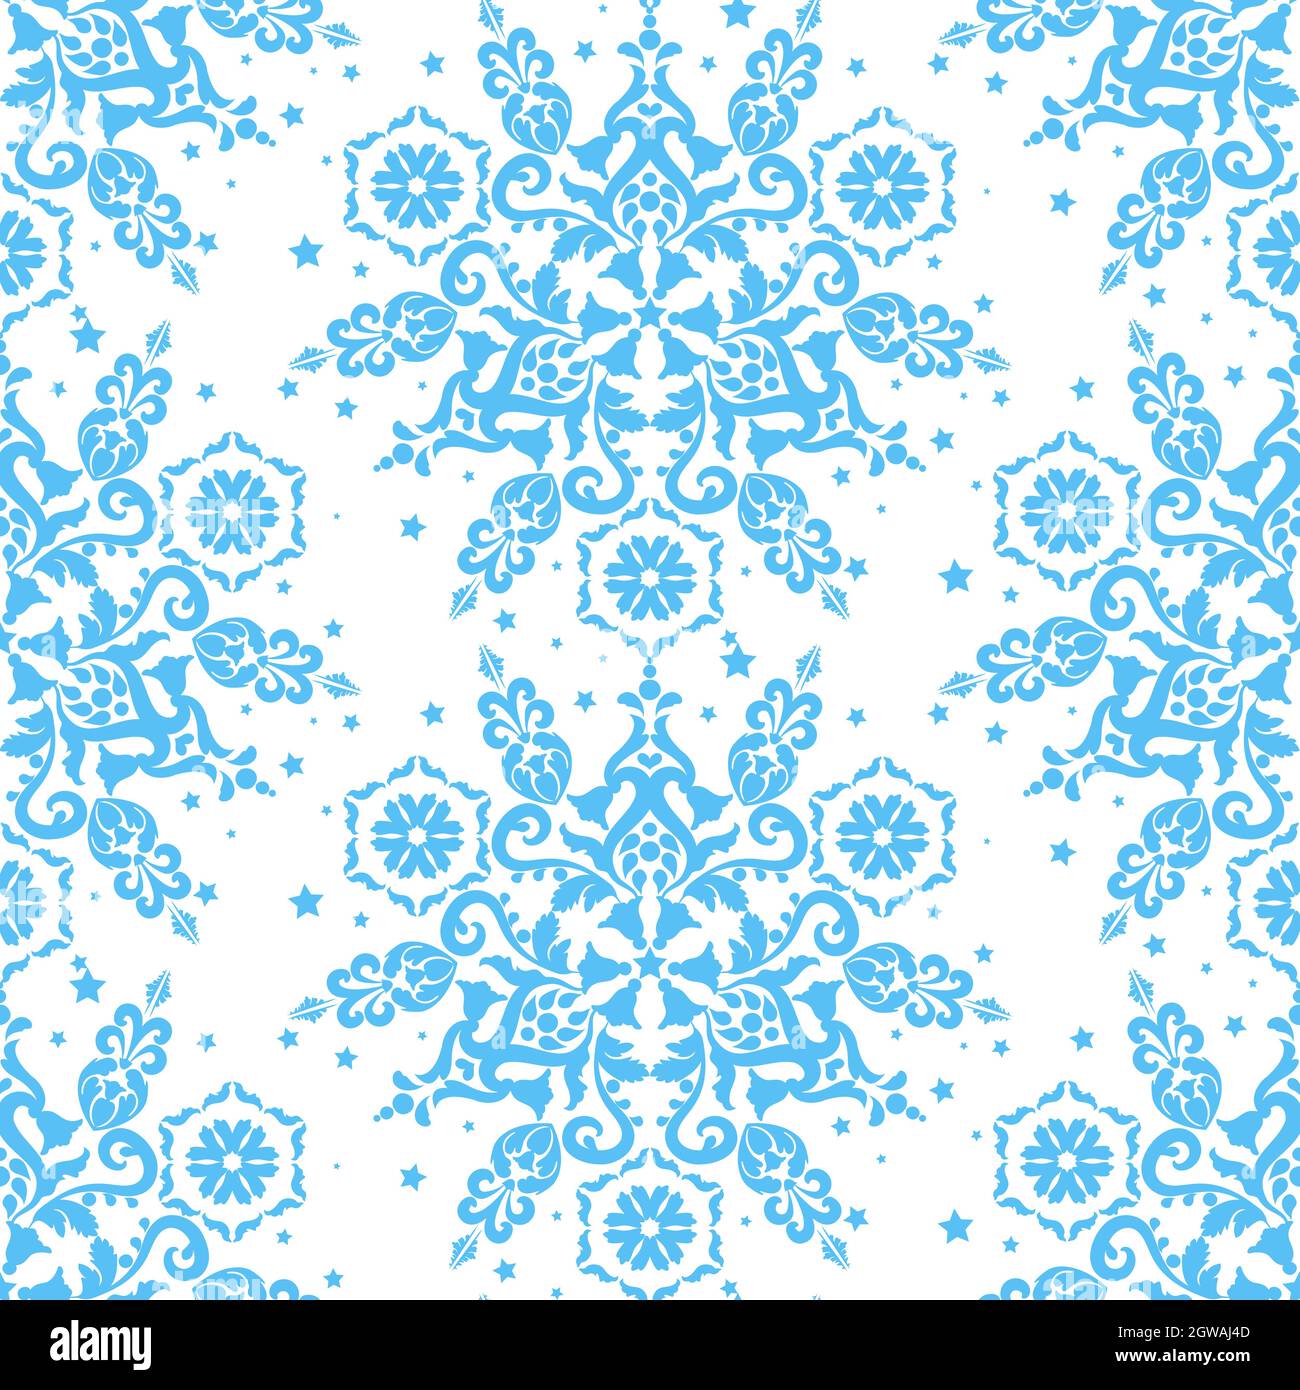 Blaue Ornament auf weißem Hintergrund nahtlose Vektor-Vorlage. Blaue und weiße Farbe. Für Stoff, Tapete, venezianisches Muster, Textil, Verpackung. Stock Vektor